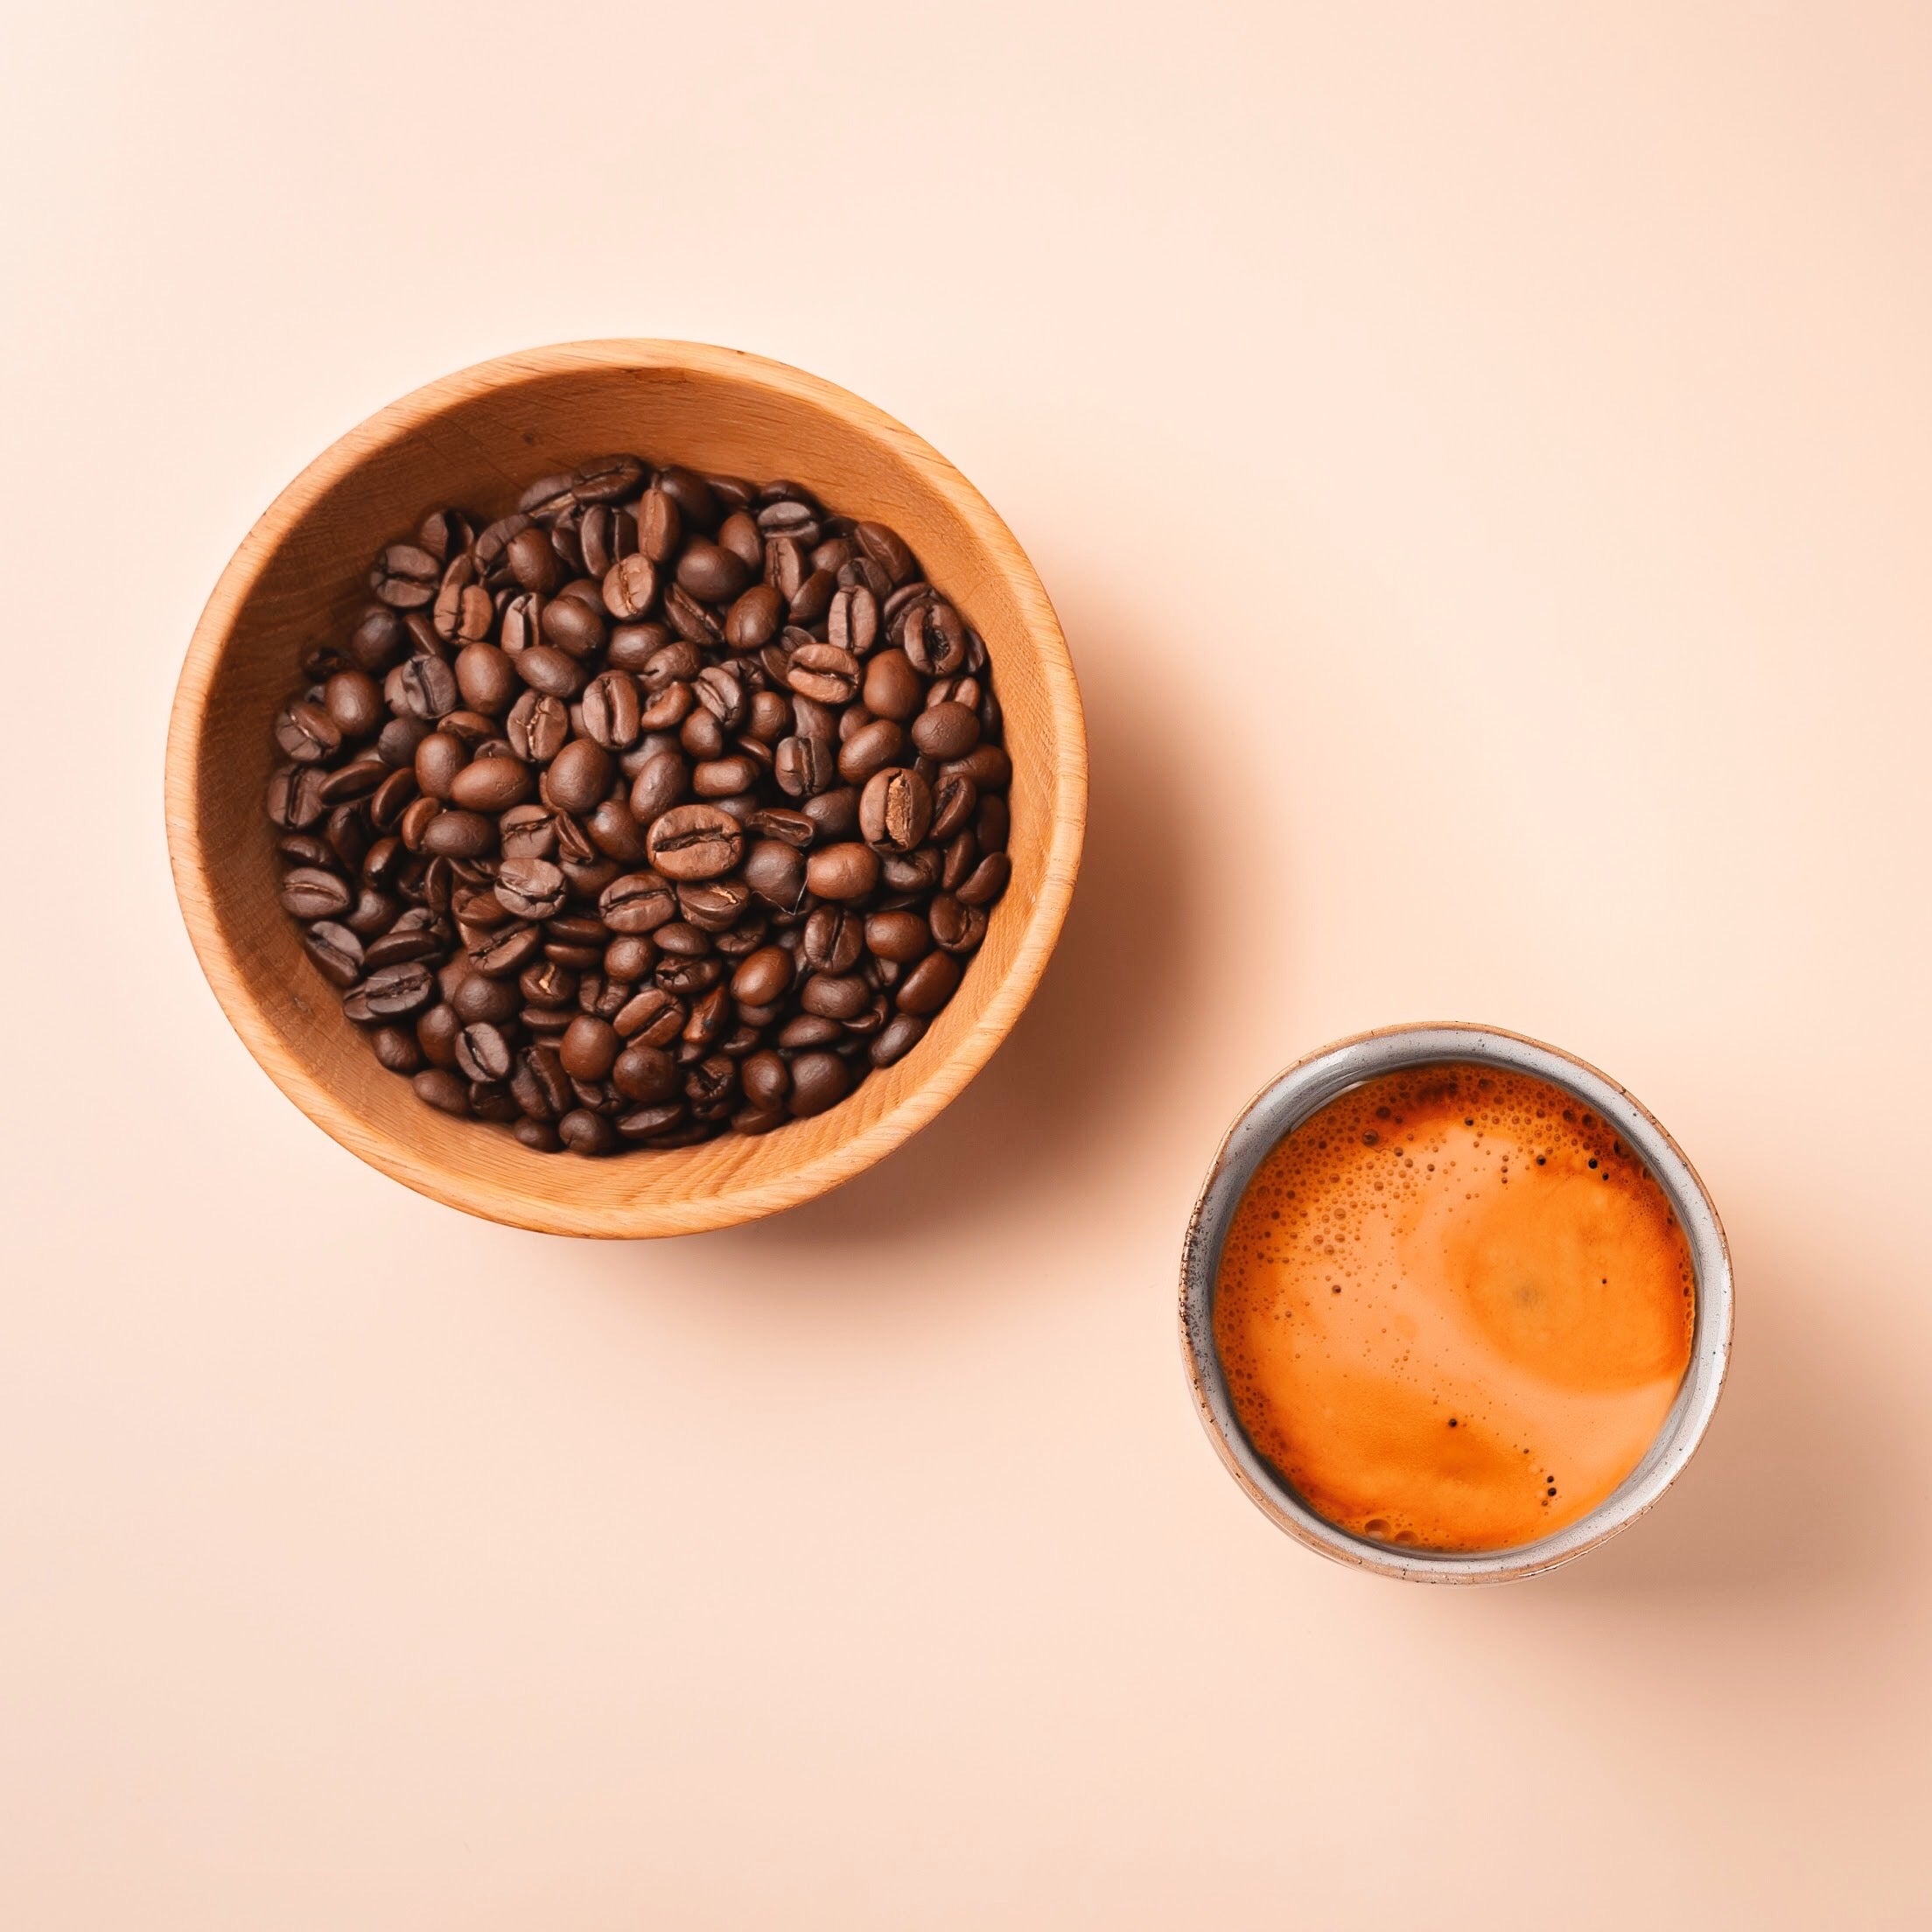 nurucoffee wurde gegründet von Sali und Sara Nuru / Bio-Kaffee mit social impact aus fairem Handel und nachhaltig produziert in Äthiopien 